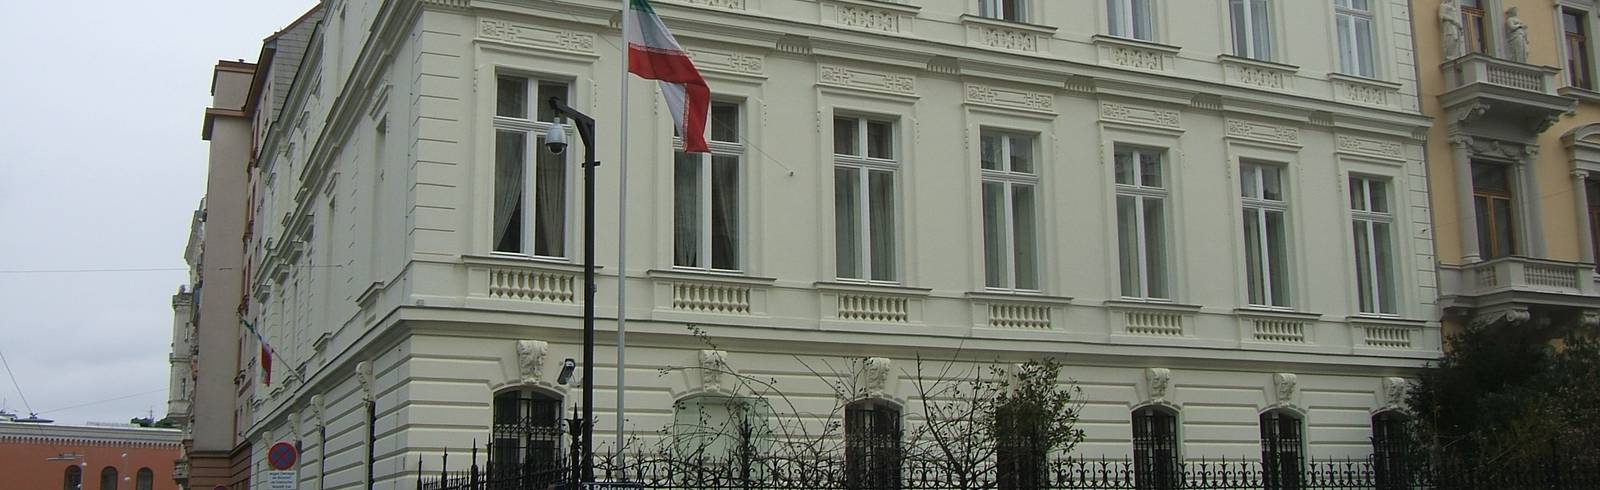 Anschlagspläne: Wien erkennt Diplomatenstatus von Iraner ab